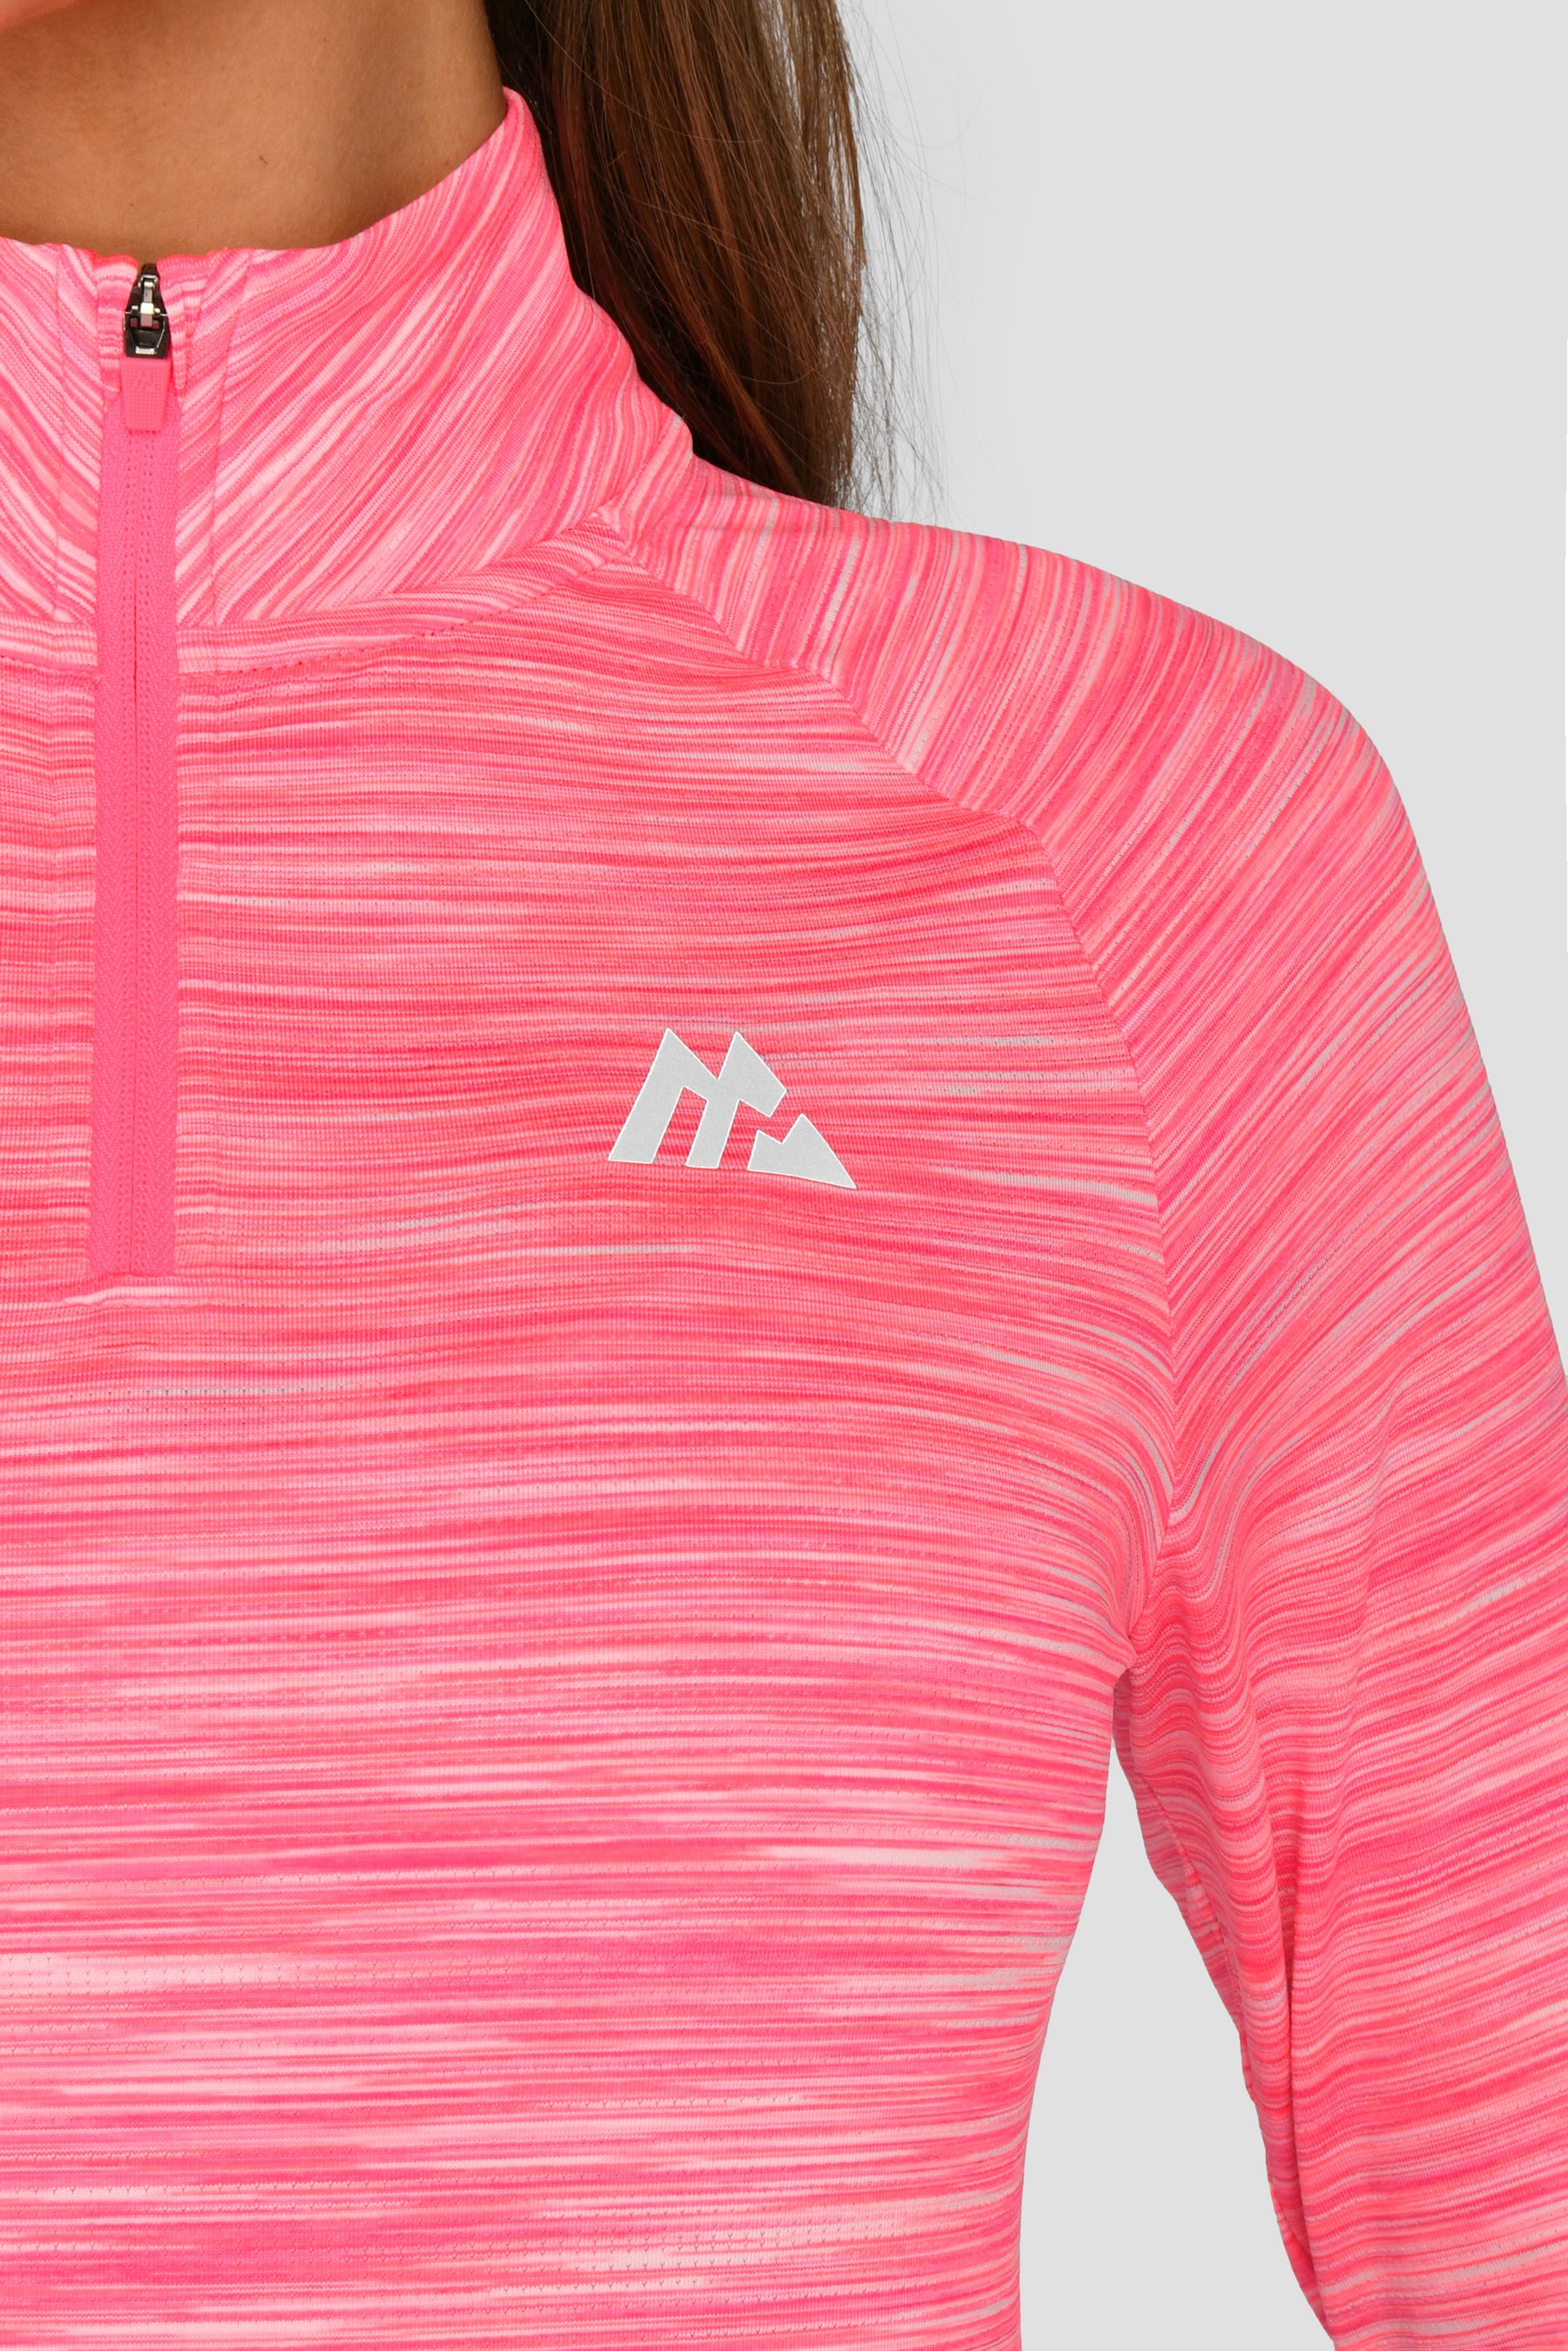 Women's Trail 2.0 1/4 Zip - Neon Pink Multi